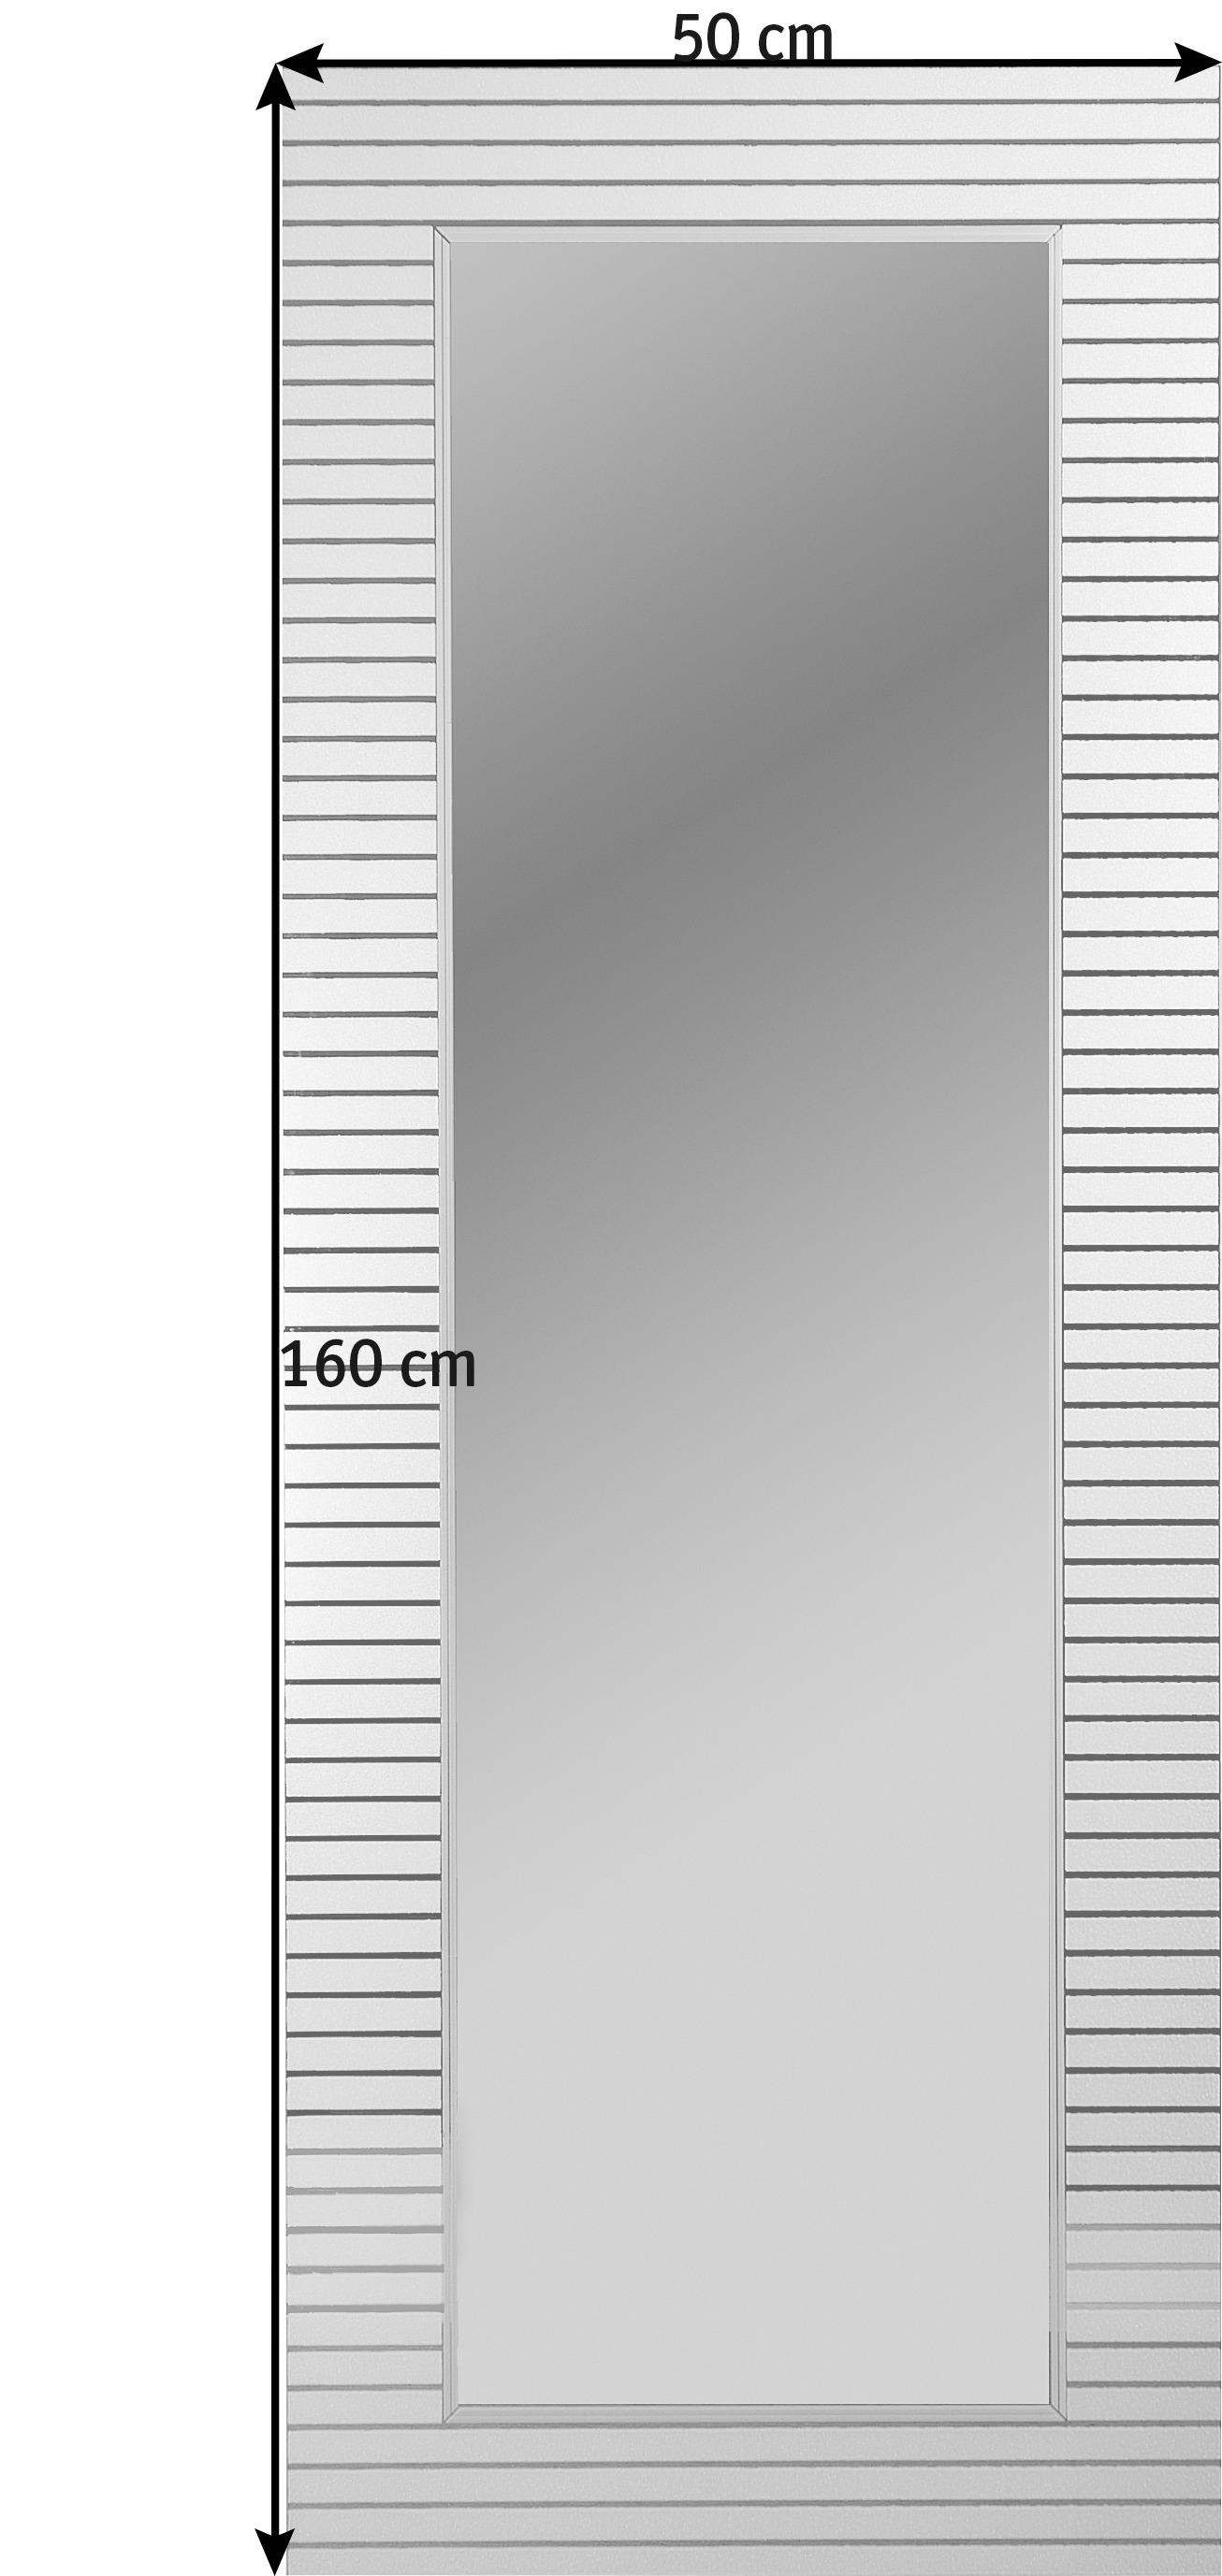 ZIDNO OGLEDALO  50/160/0,3 cm     - bela, Dizajnerski (50/160/0,3cm) - Boxxx